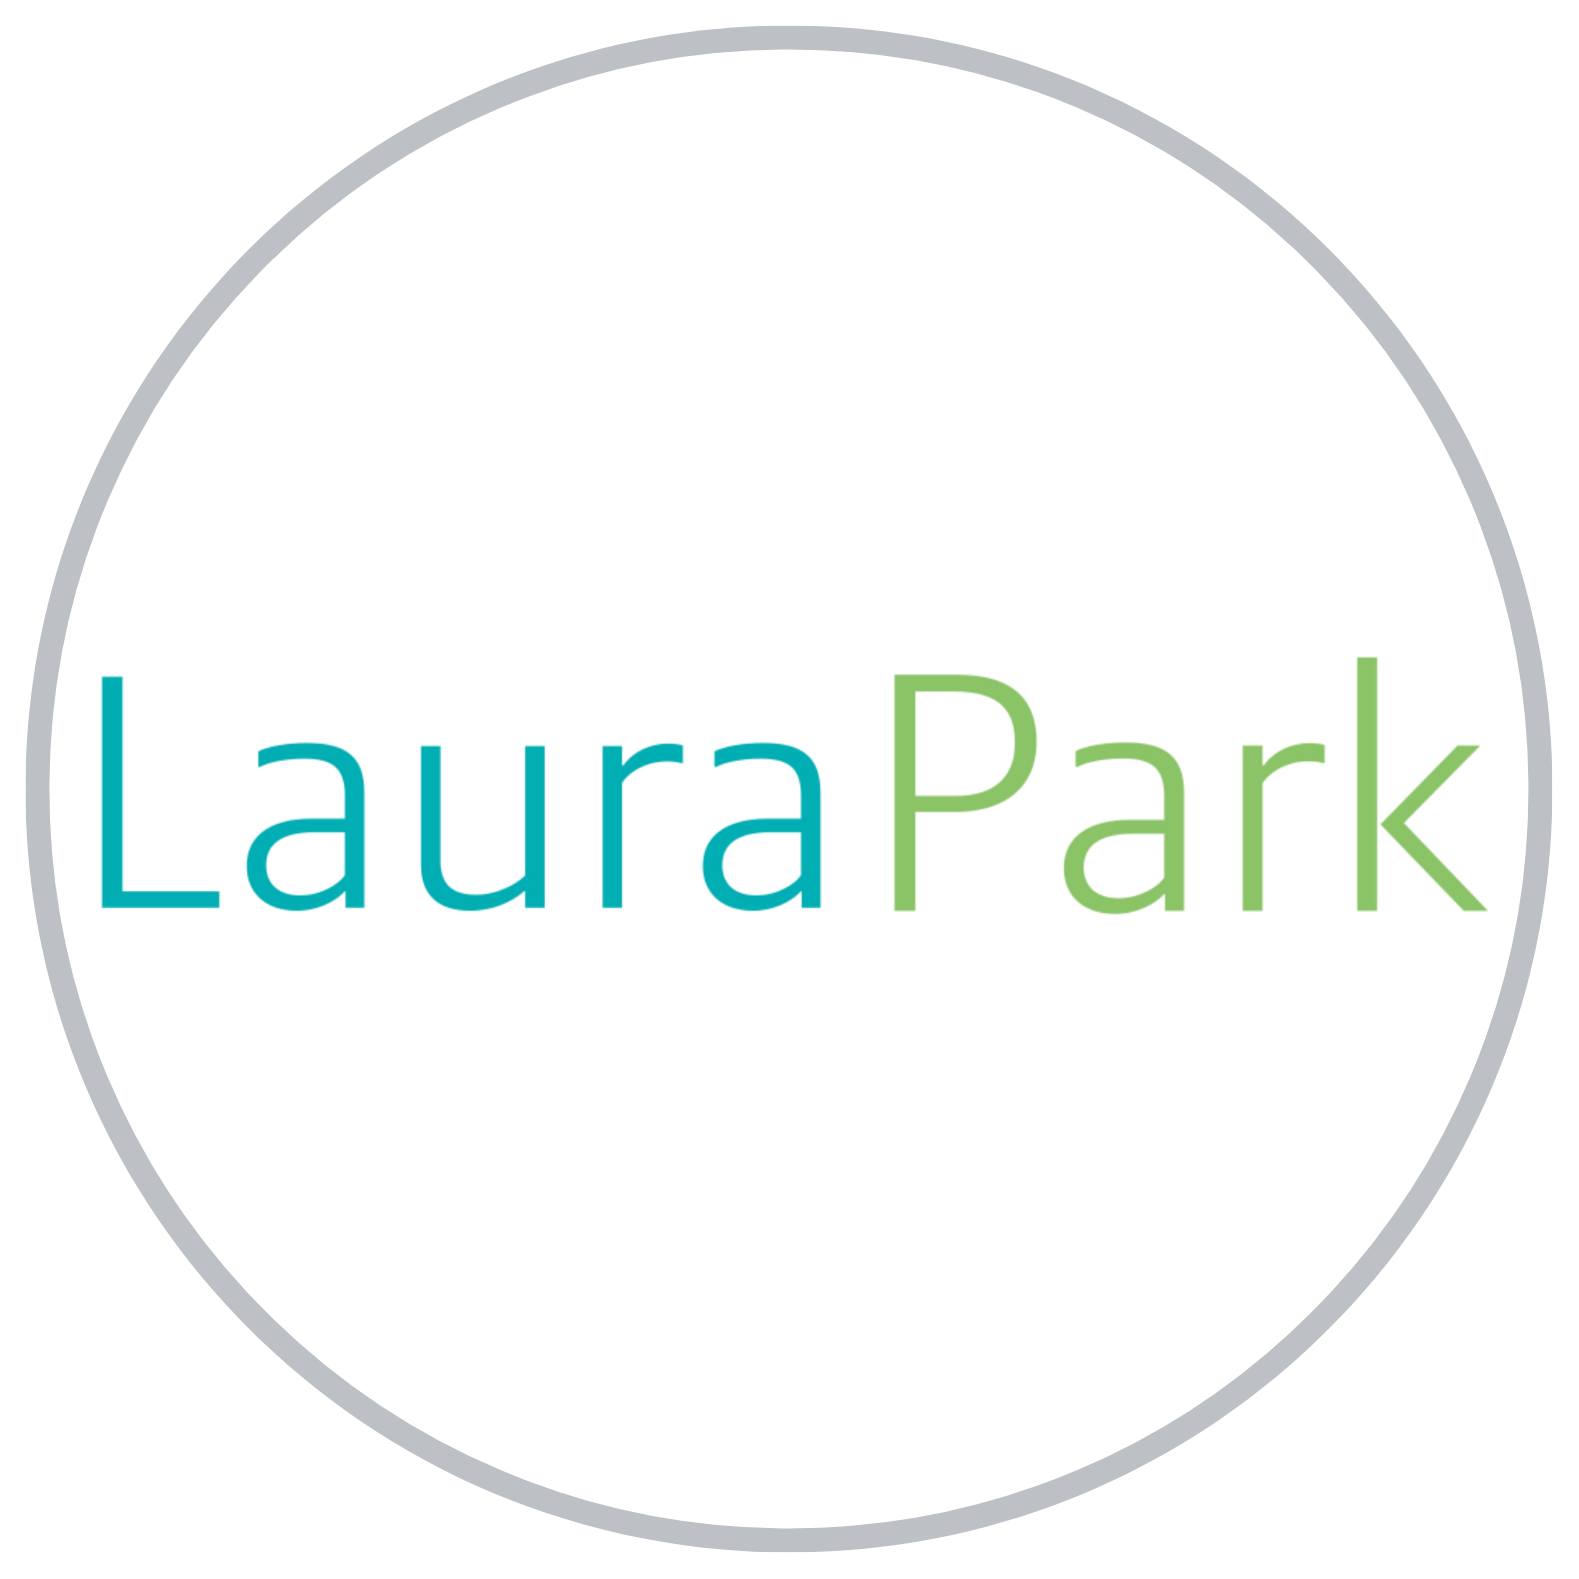 Laura Park